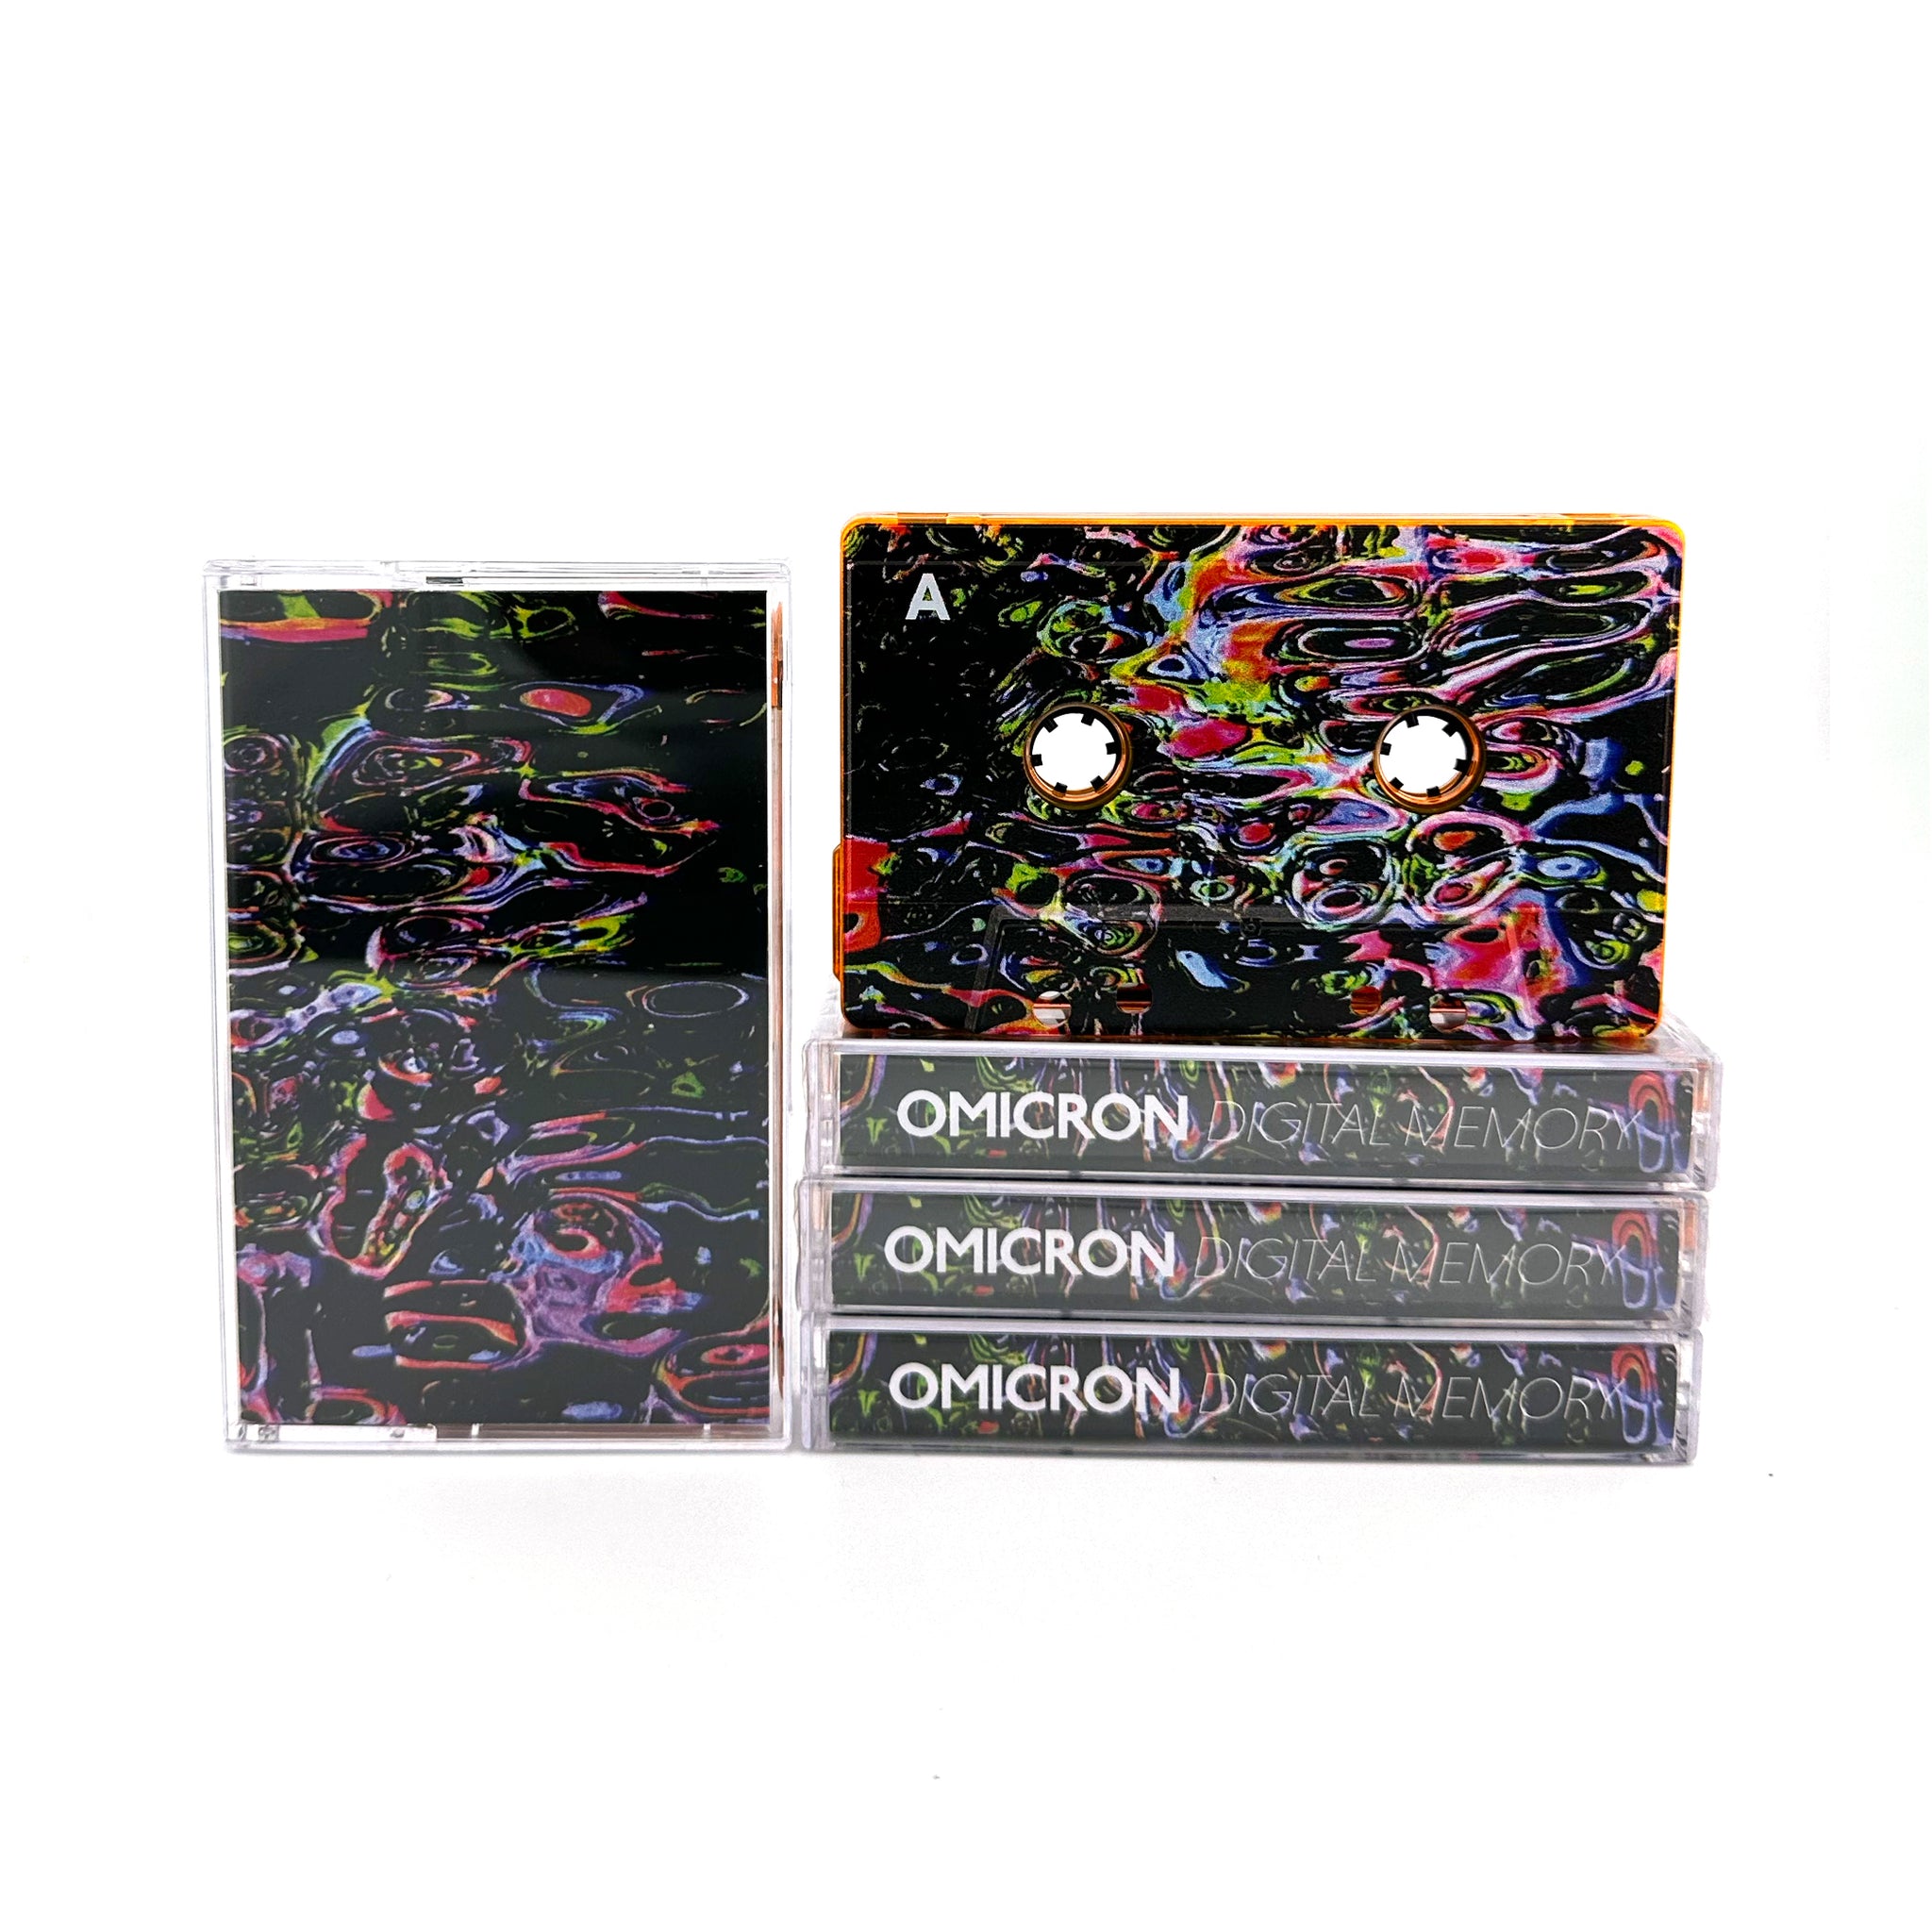 Omicron - Digital Memory